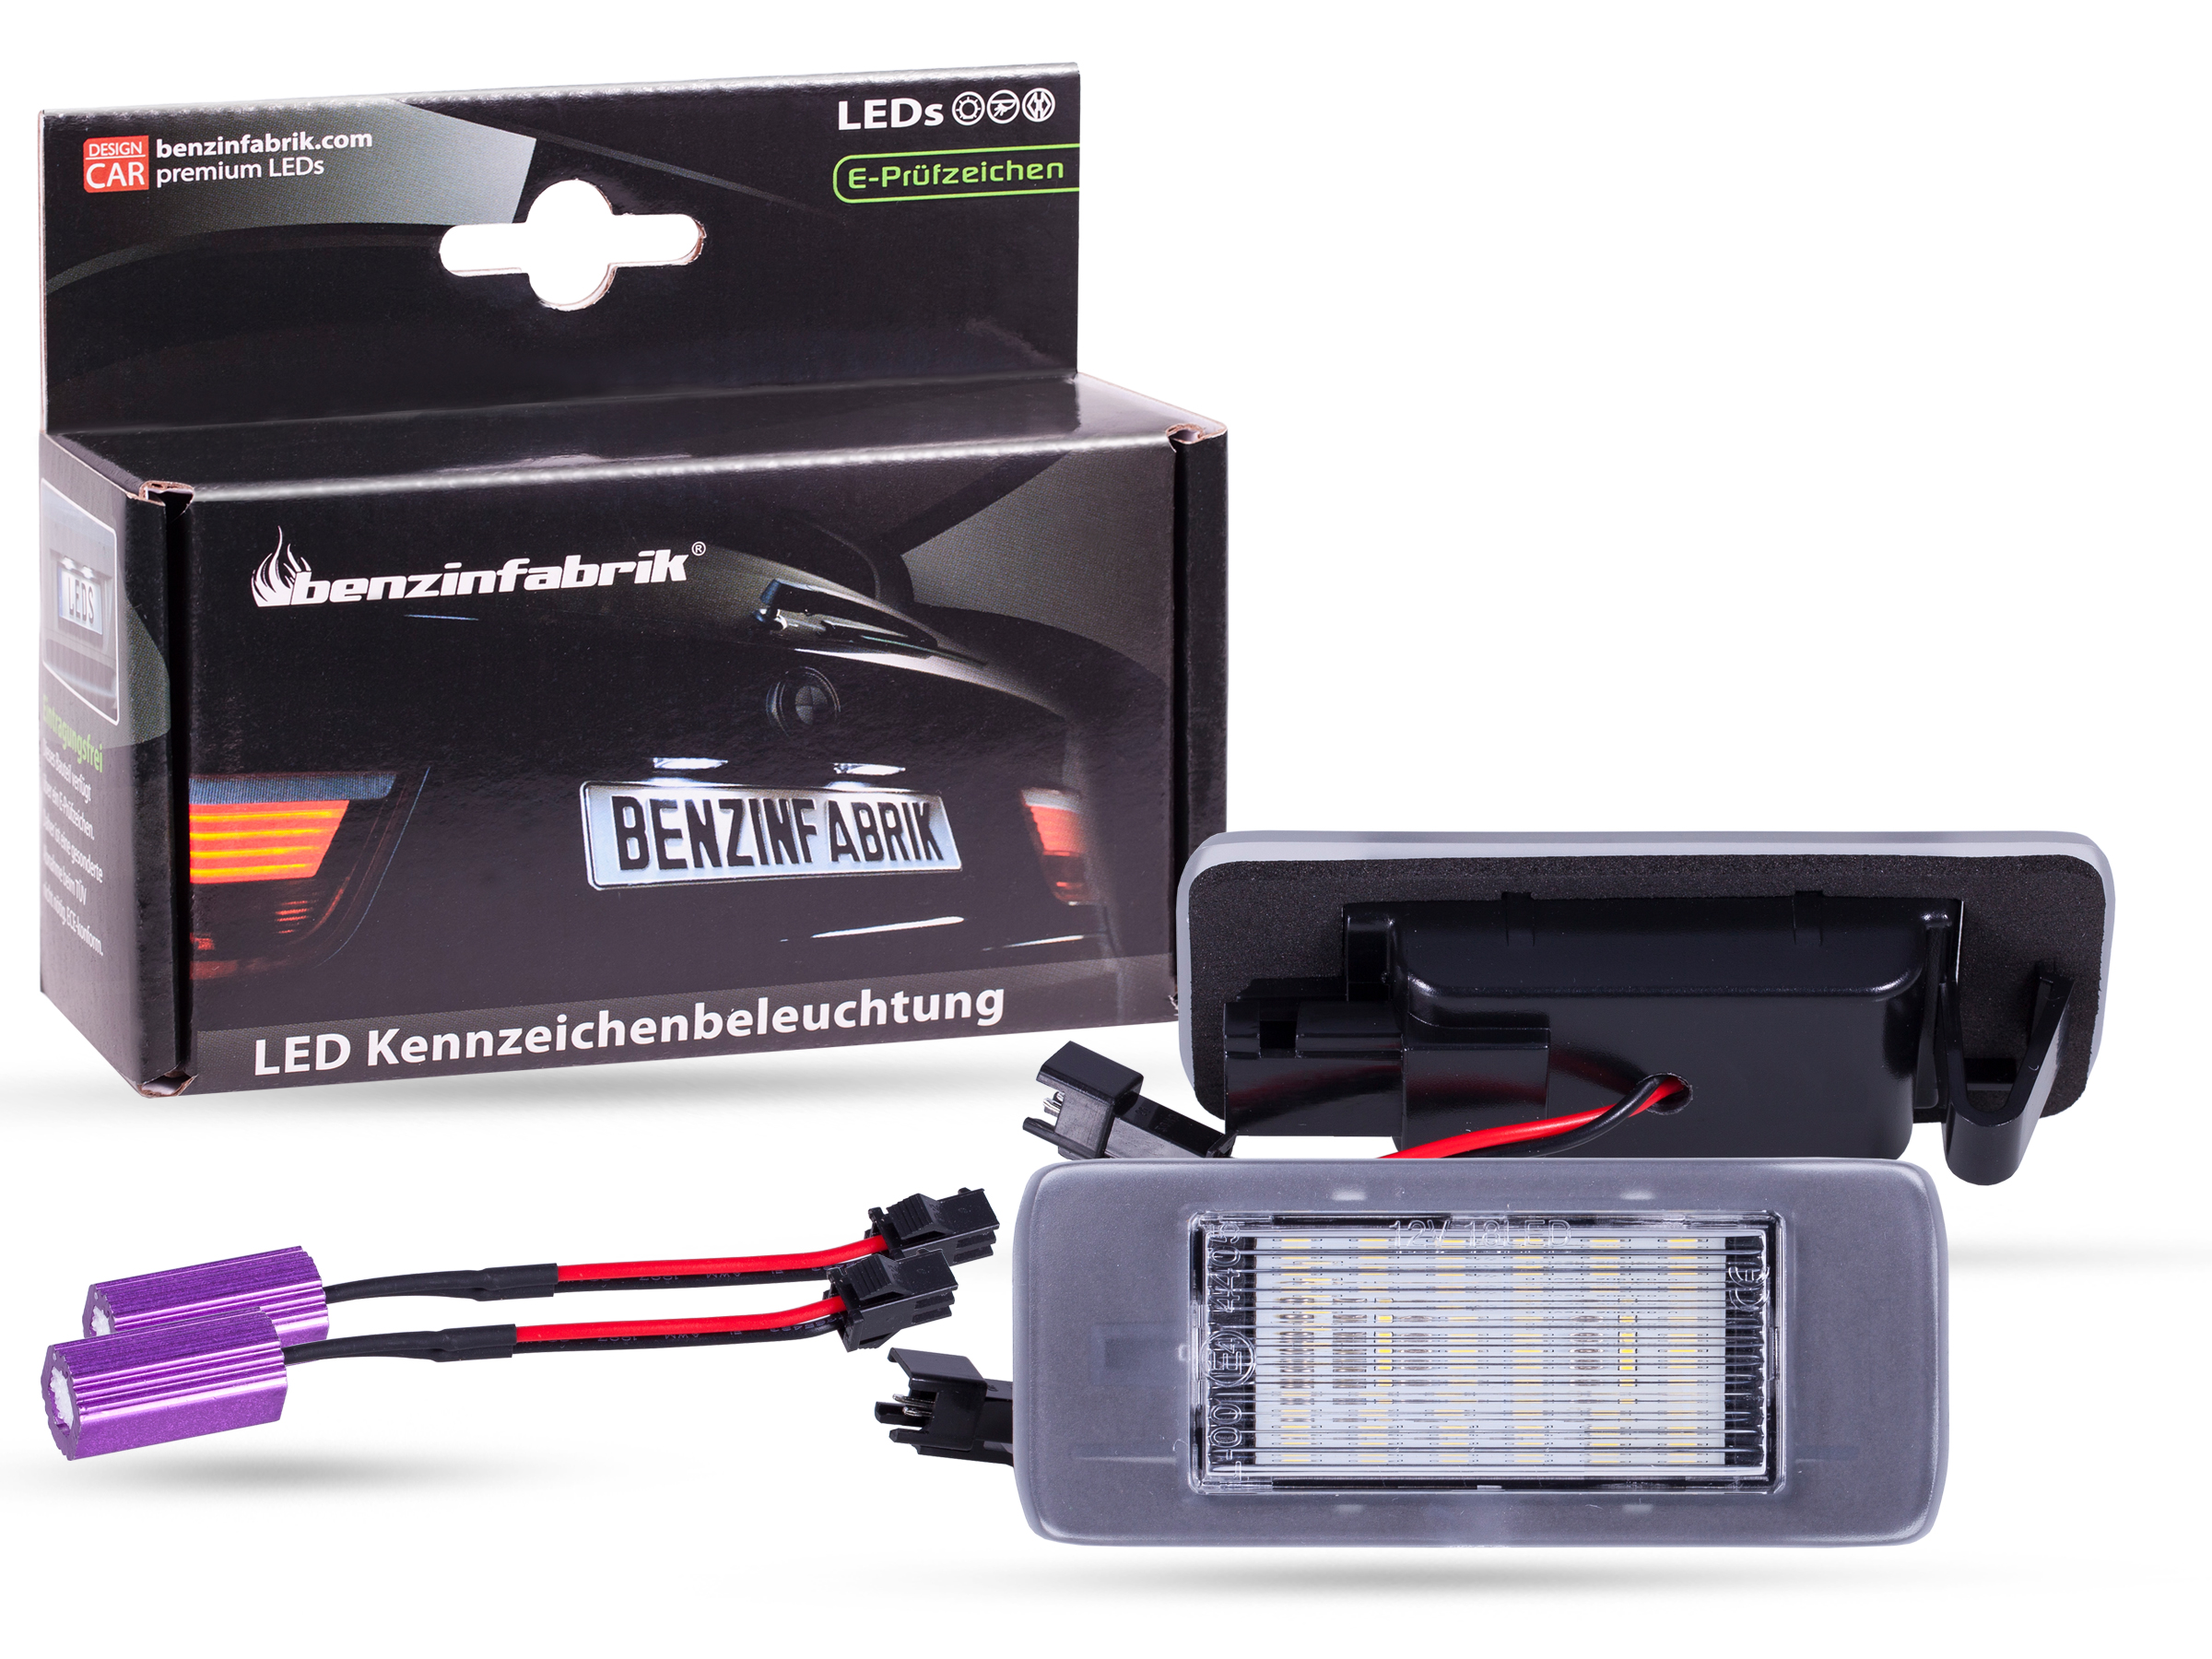 LED Kennzeichenbeleuchtung Module Opel Zafira C, mit E-Prüfzeichen, LED  Kennzeichenbeleuchtung für Opel, LED Kennzeichenbeleuchtung